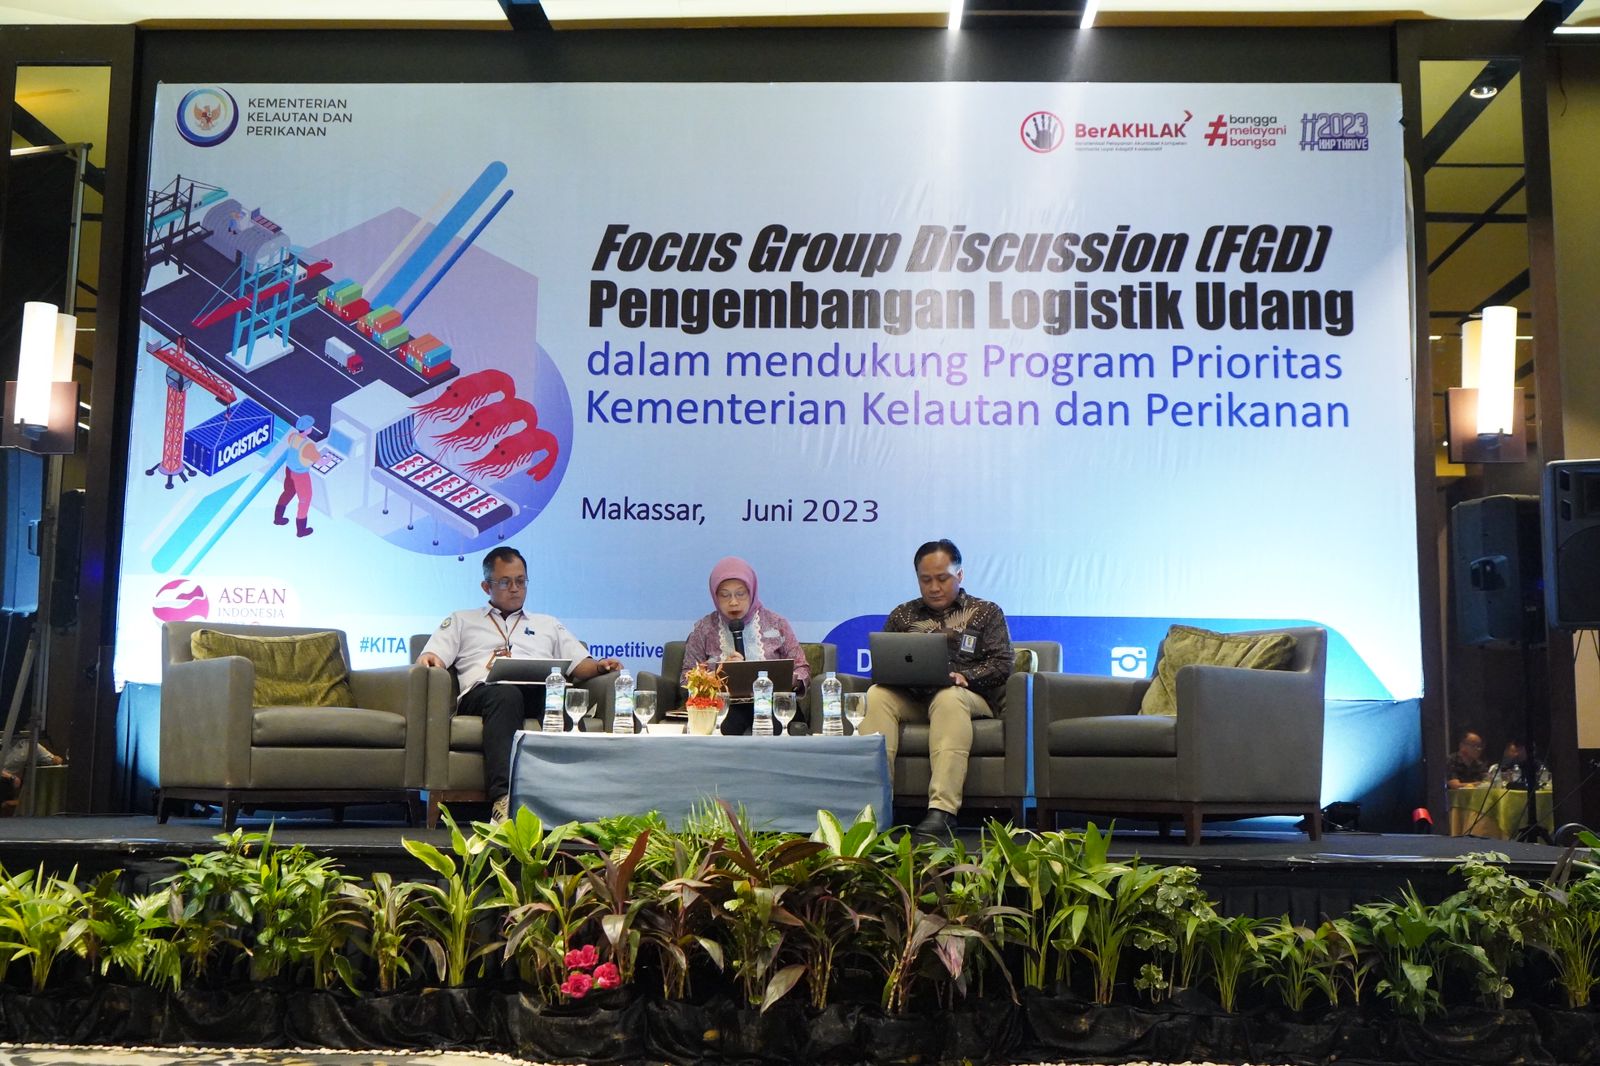 FGD Pengembangan Logistik Udang dalam mendukung Program Prioritas Kementerian Kelautan dan Perikanan